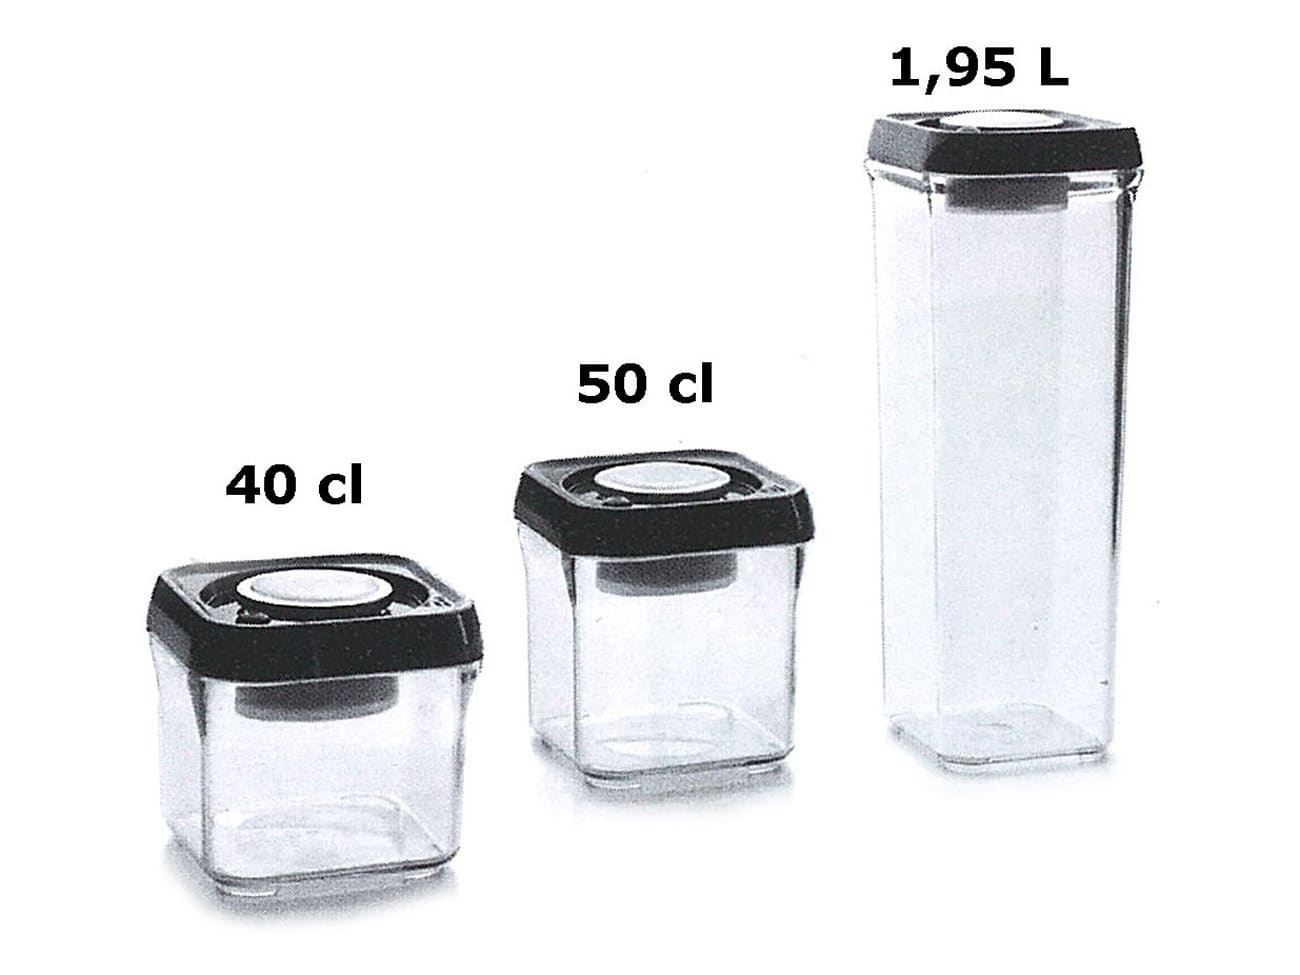 Boîte conservation carrée verre 1,20 litre Achat/Vente au meilleur prix